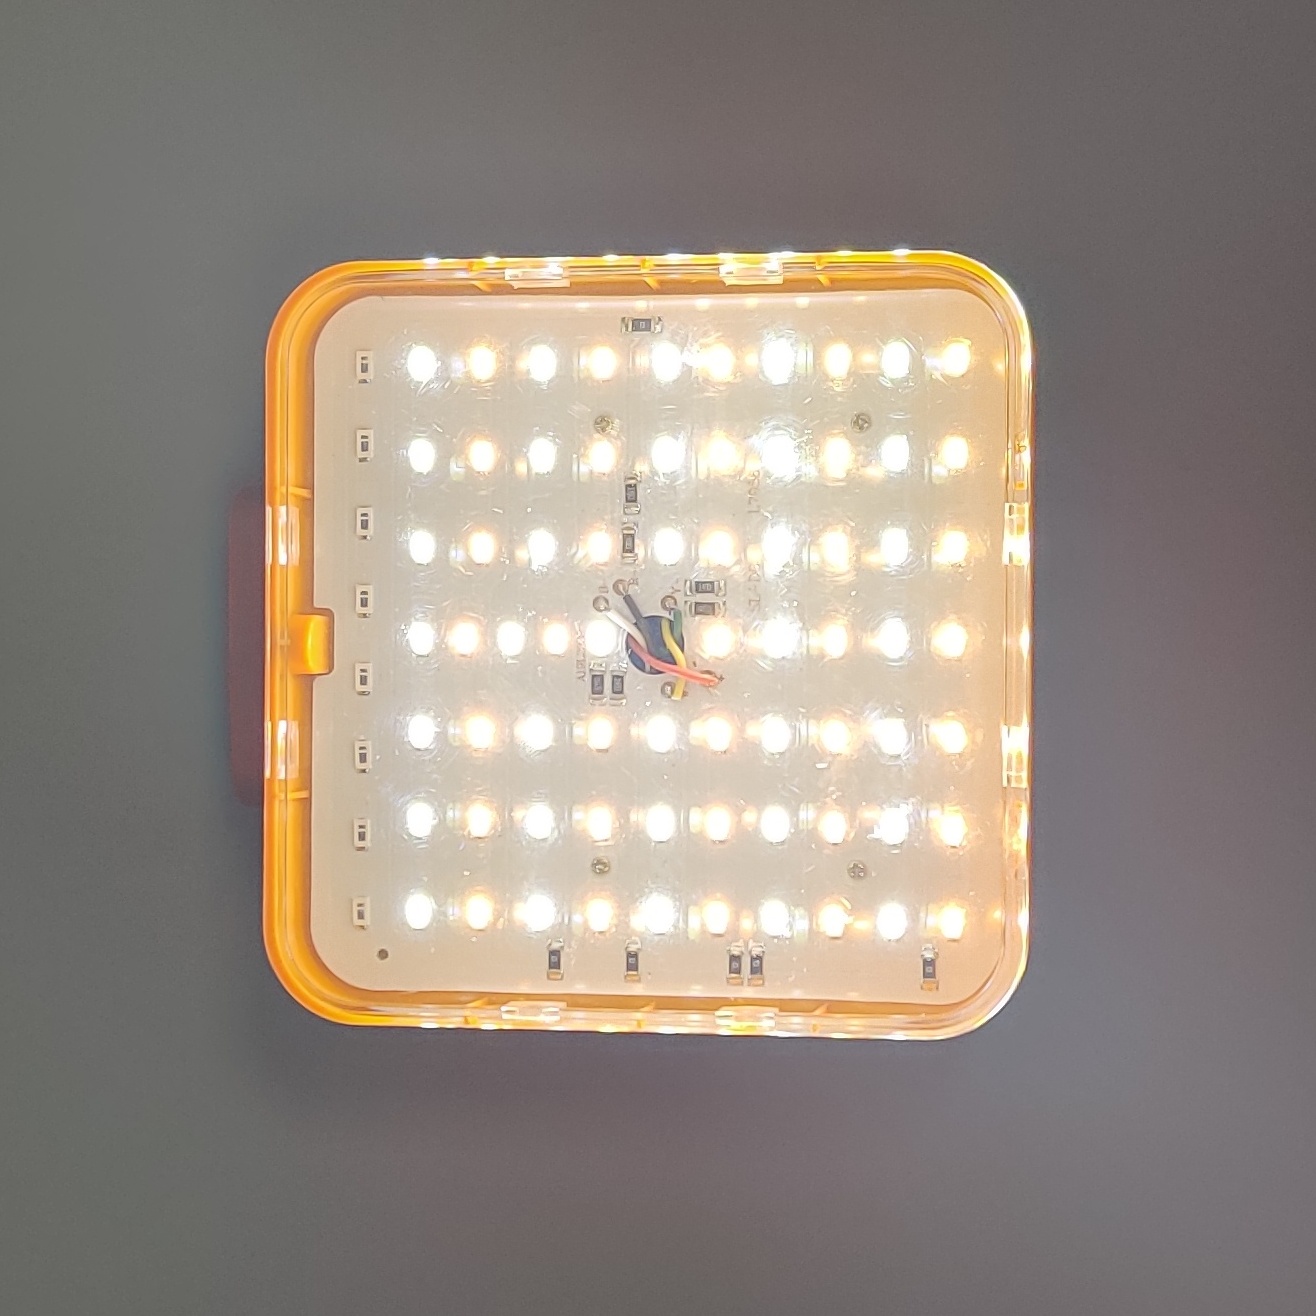 LED Work Light Flood Spot Lamp For Camping Fishing Lighting Emergency Lighting USB Charging & Solar Powered